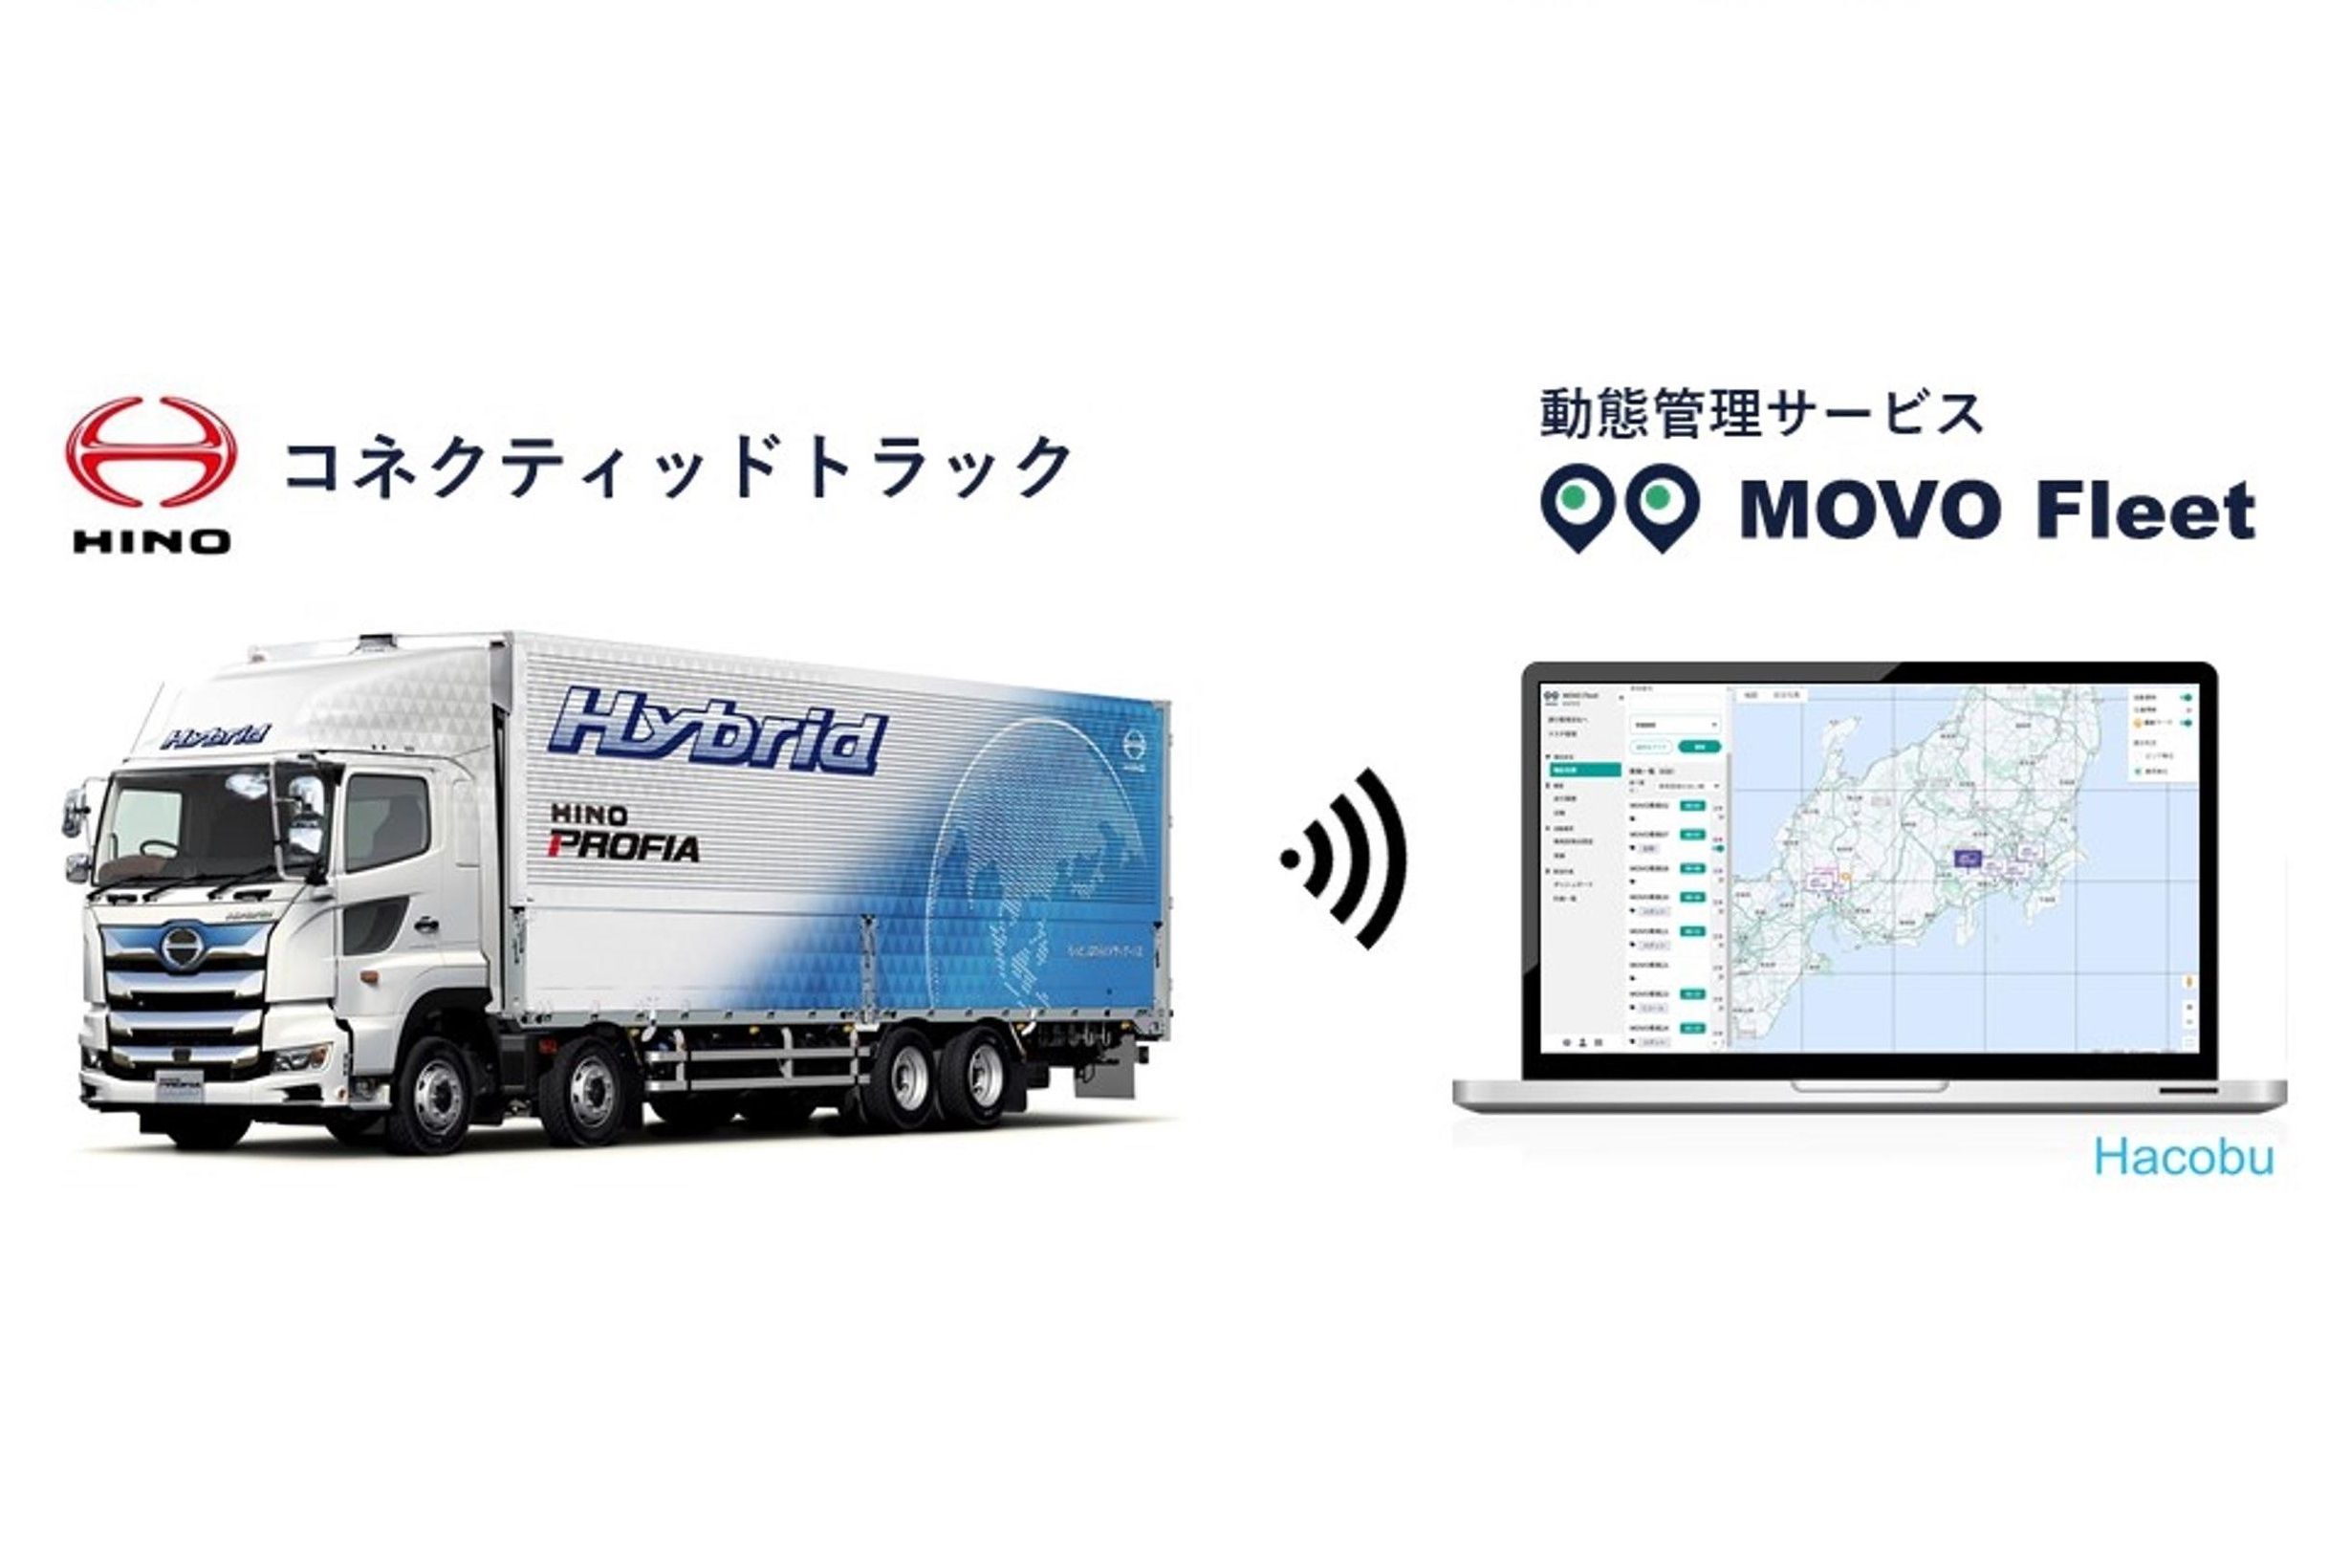 Hacobuの動態管理サービス「MOVO Fleet」は日野自動車のコネクティッドトラックで利用できる